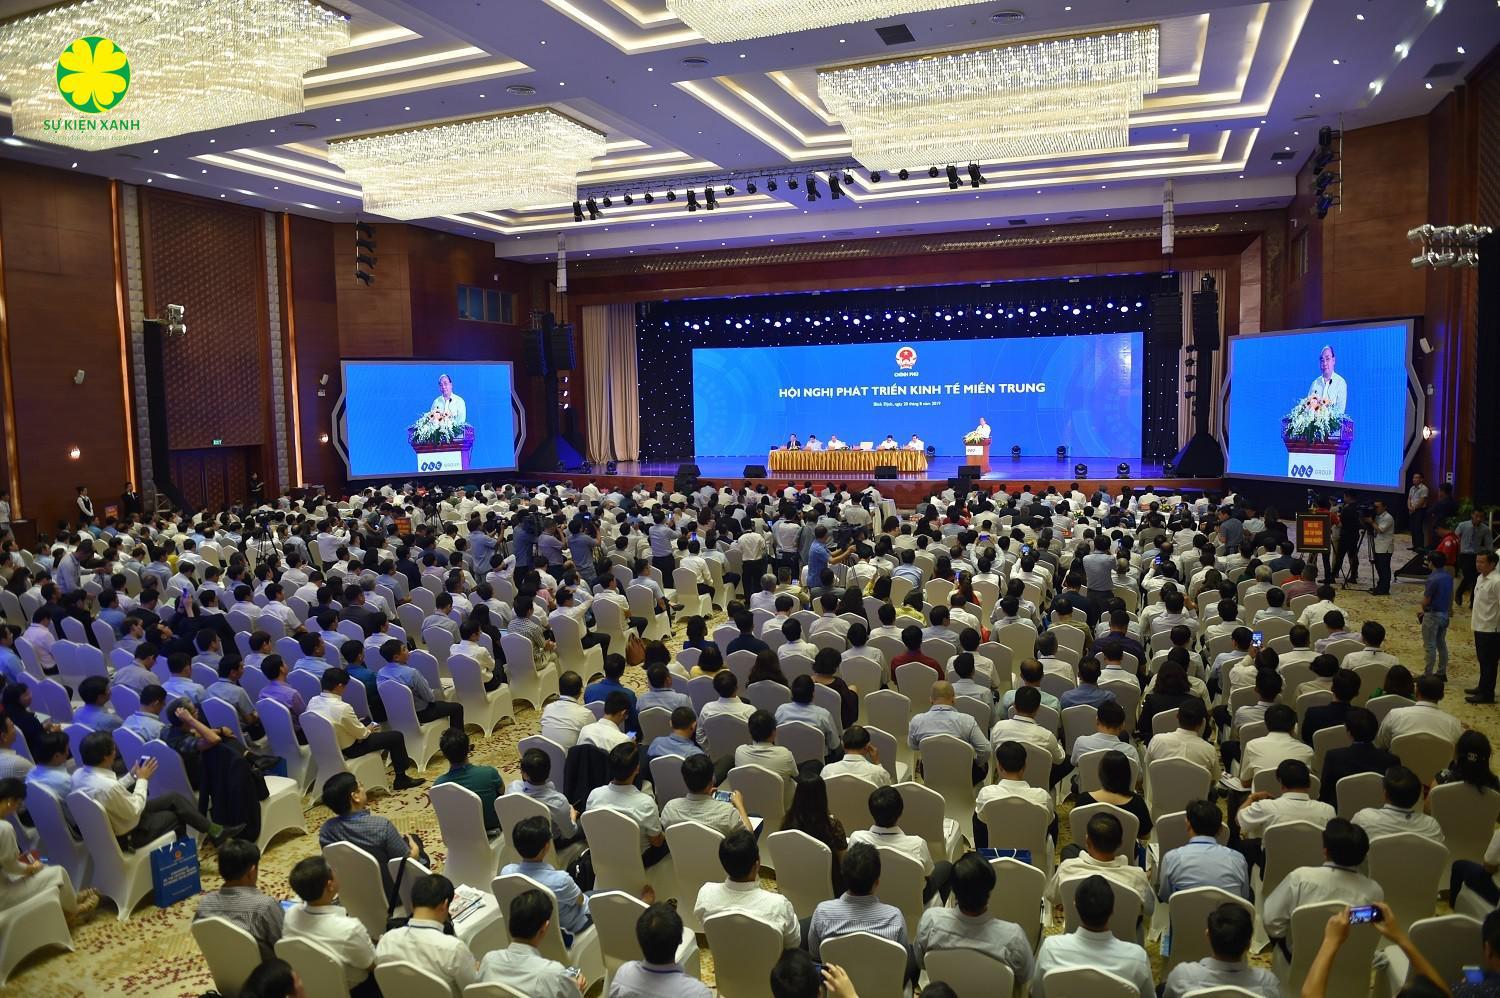 Công ty tổ chức Hội thảo hội nghị tại Hưng Yên ấn tượng